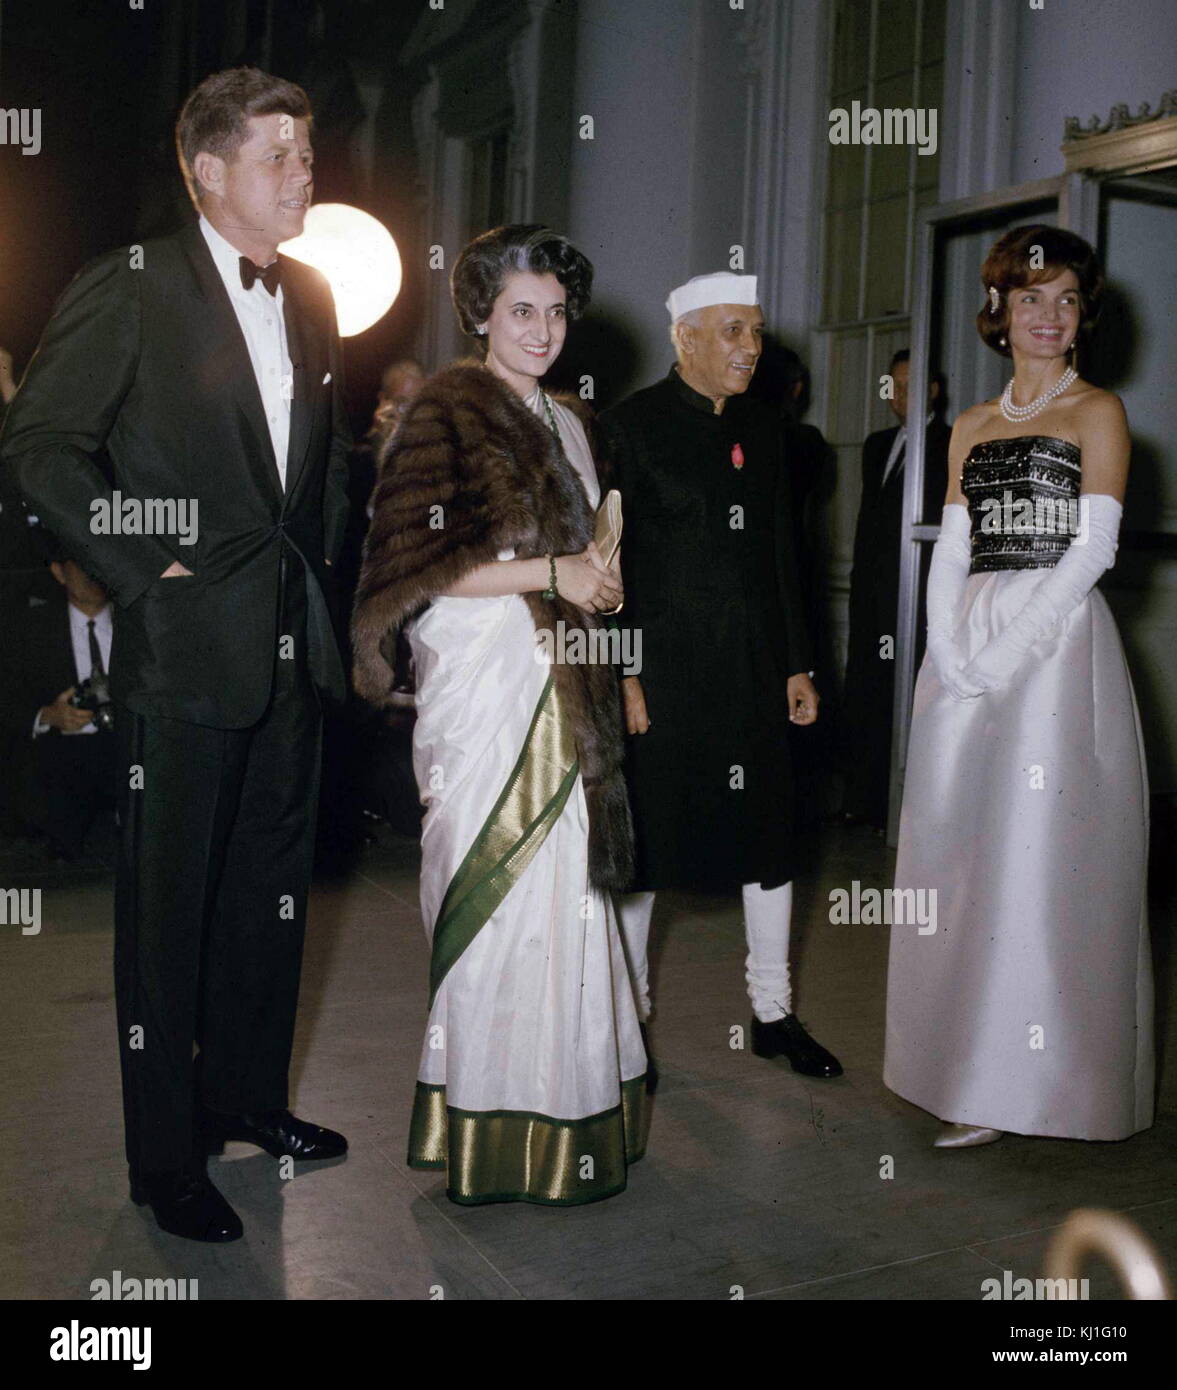 Jawaharlal Nehru (1889 -1964) Primo Ministro dell'India, e sua figlia Indira Gandhi incontrare il presidente statunitense John F Kennedy (1917-1963) e sua moglie Jackie, alla Casa Bianca 1962-Indira-Gandhi-Nehru - Copia Foto Stock